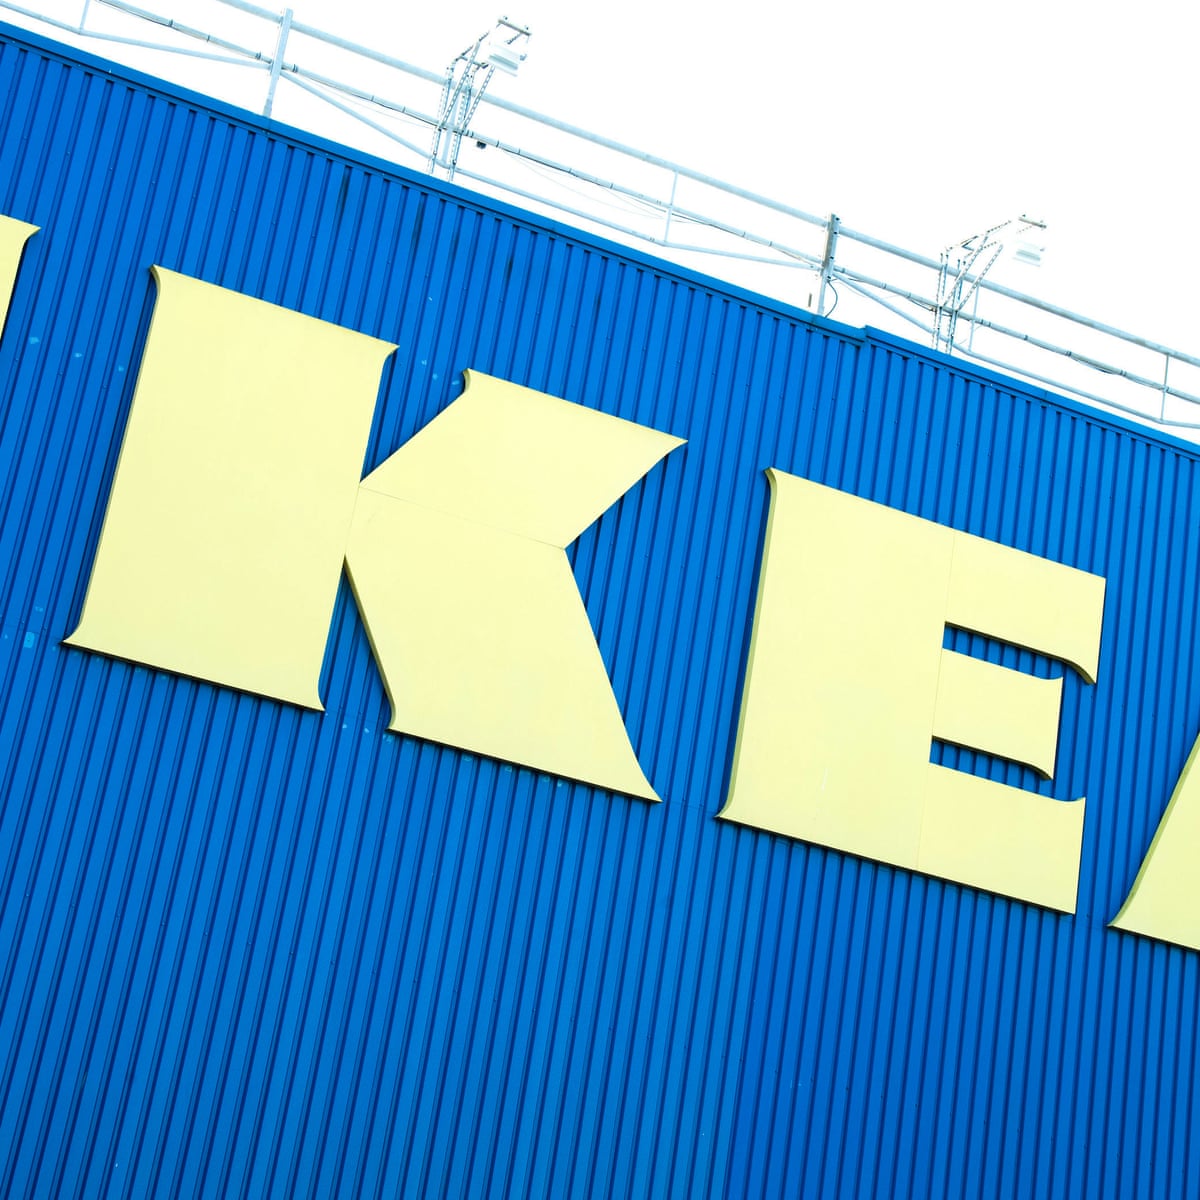 Online chat ikea Ikea Customer